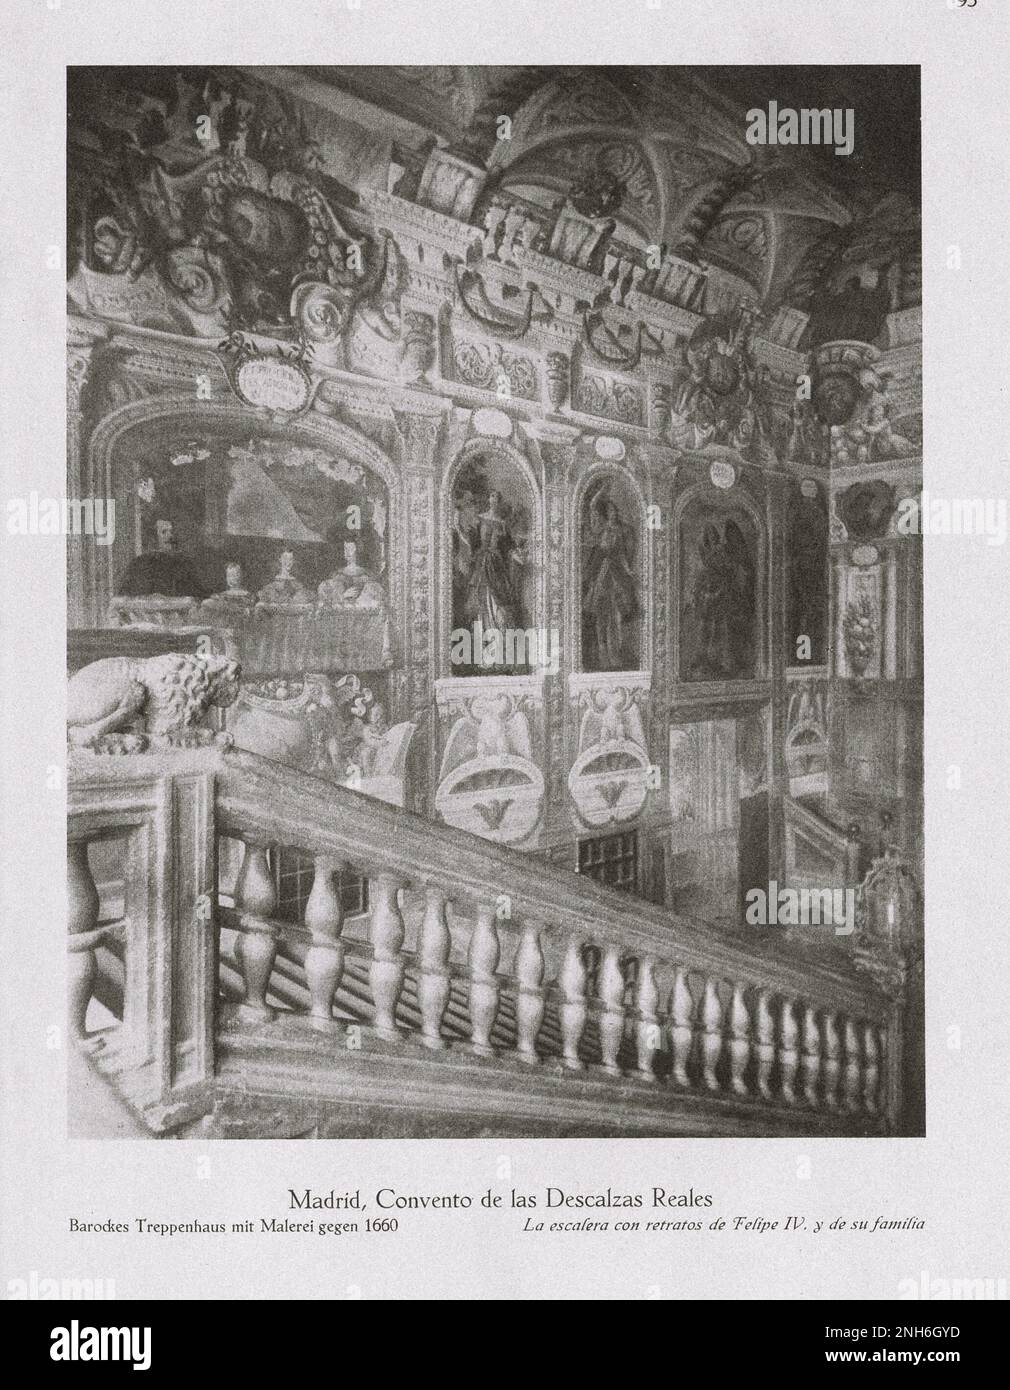 Architecture de la vieille Espagne. Photo d'époque du couvent de Las Descalzas (Reales Monasterio de las Descalzas Reales) à Madrid. Escalier baroque avec peinture autour de 1660. Banque D'Images